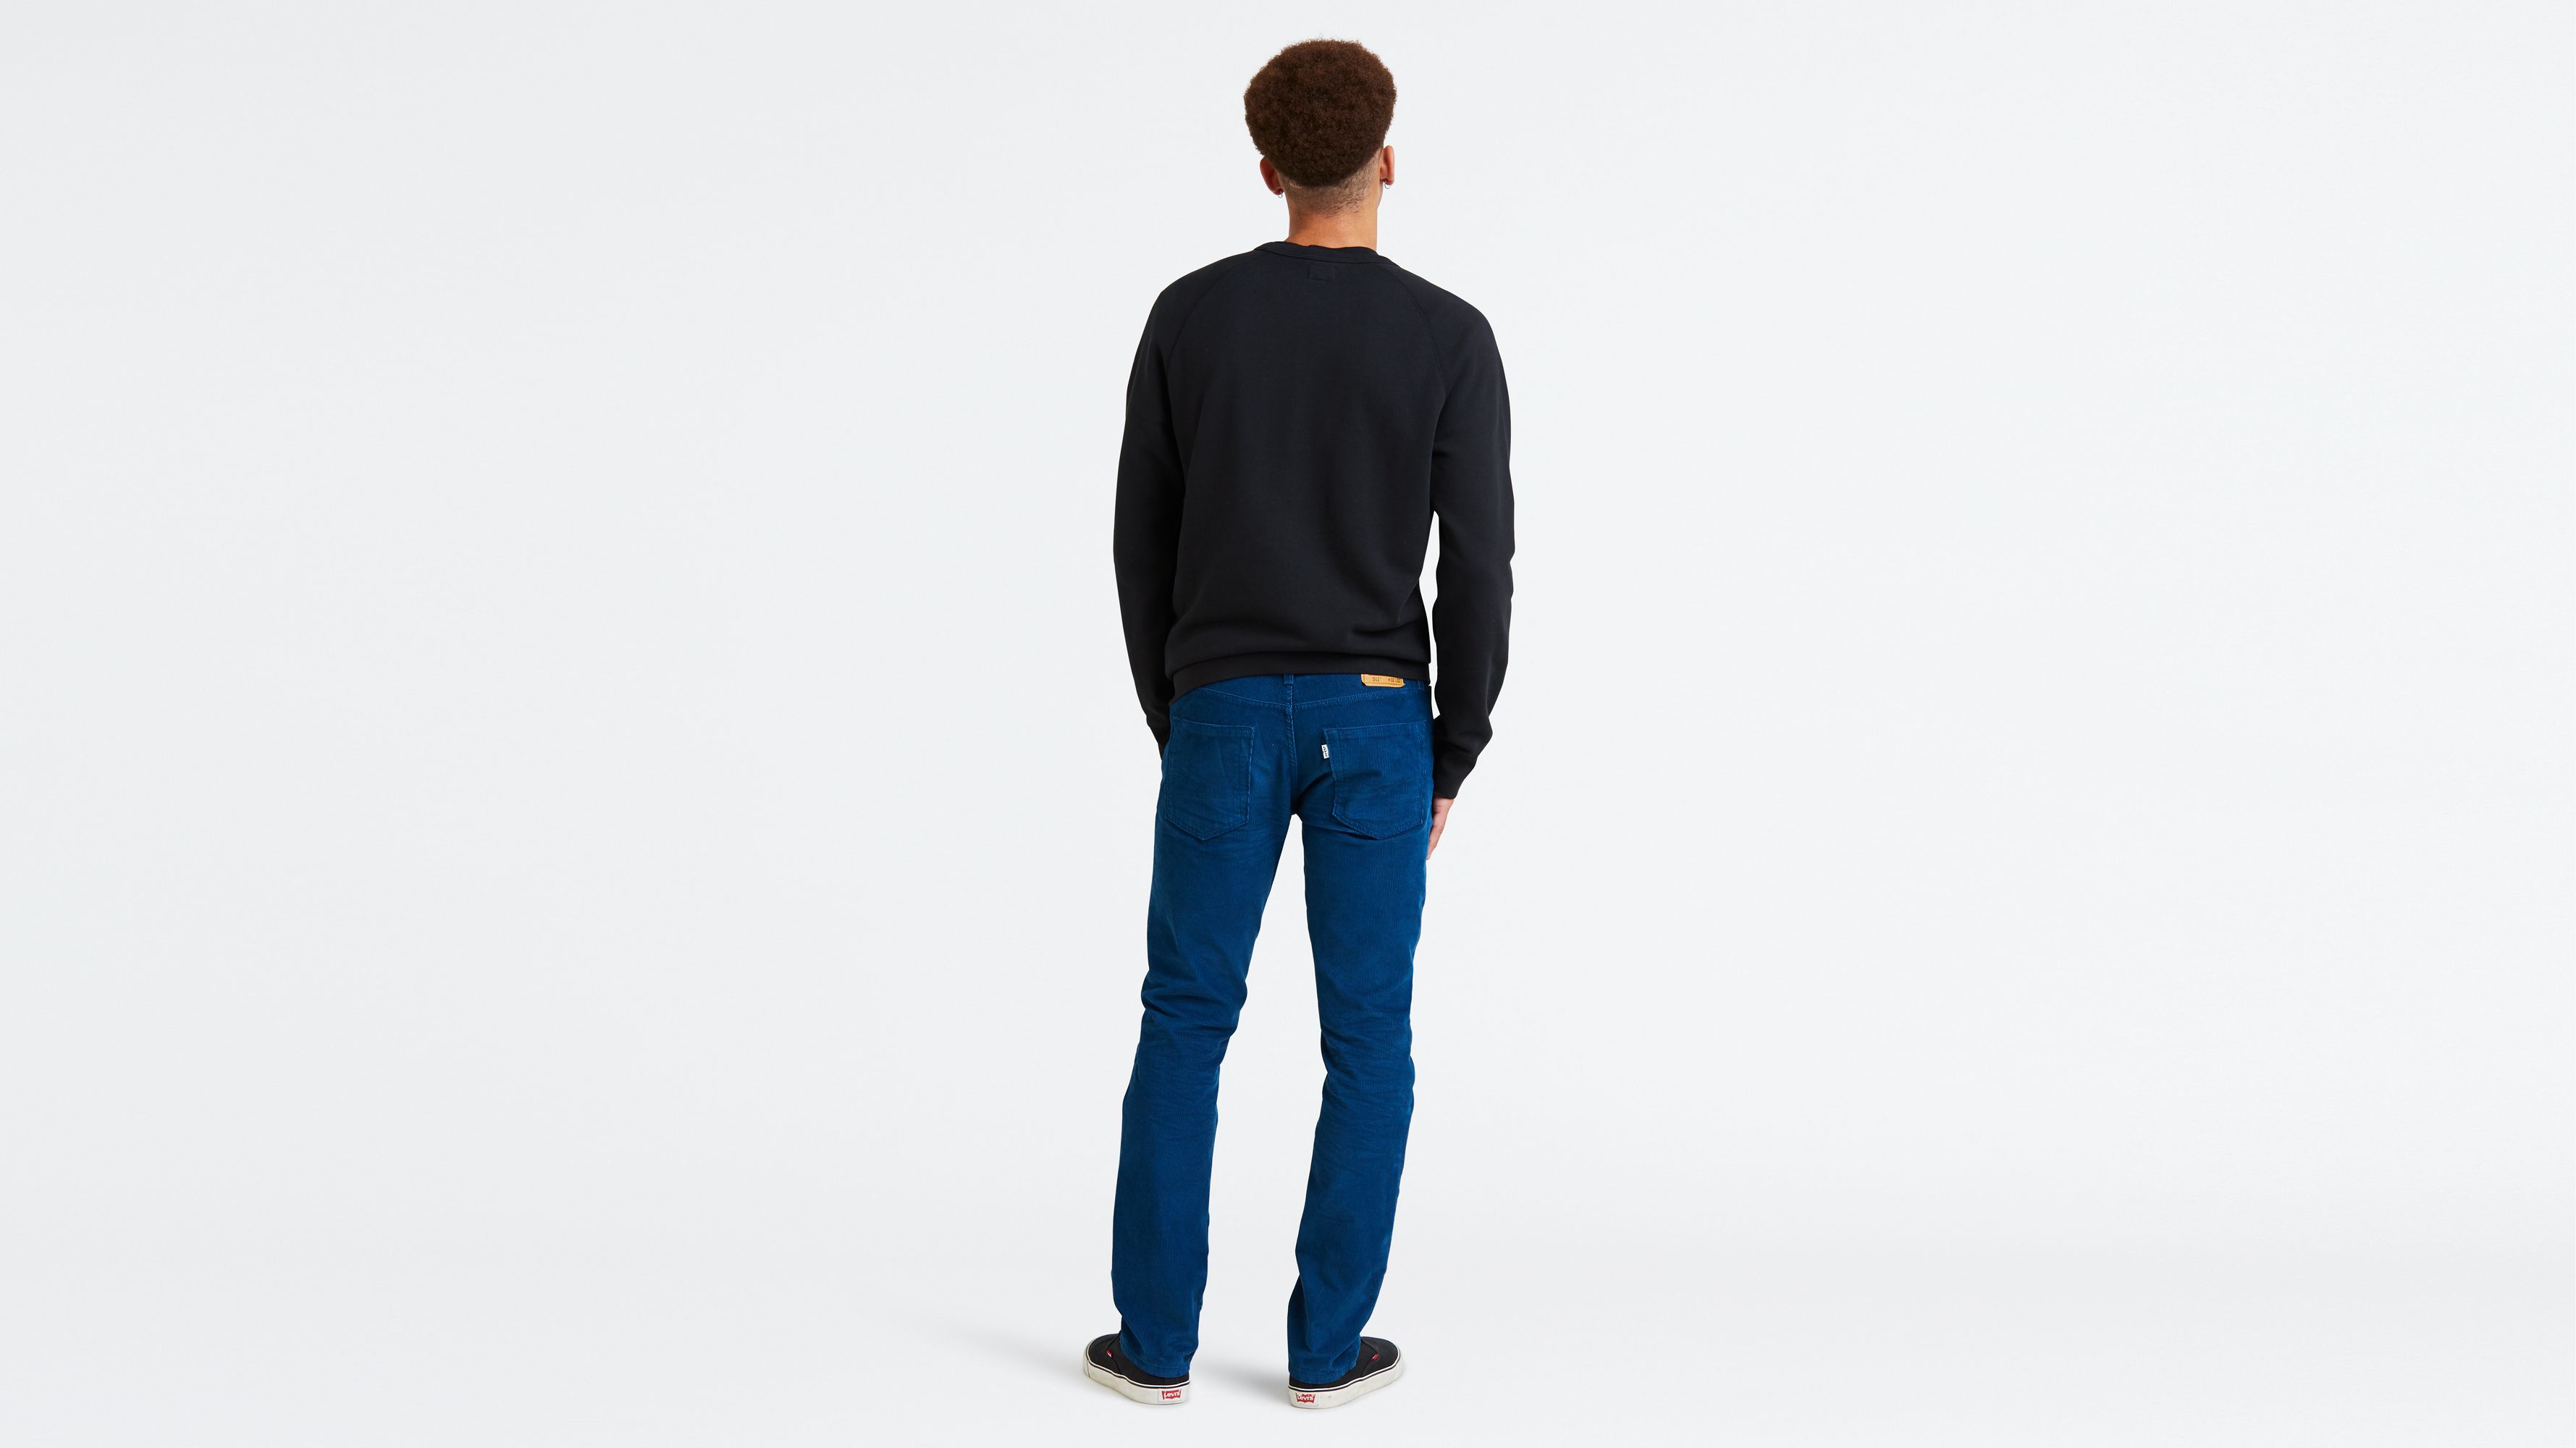 levis cord jeans